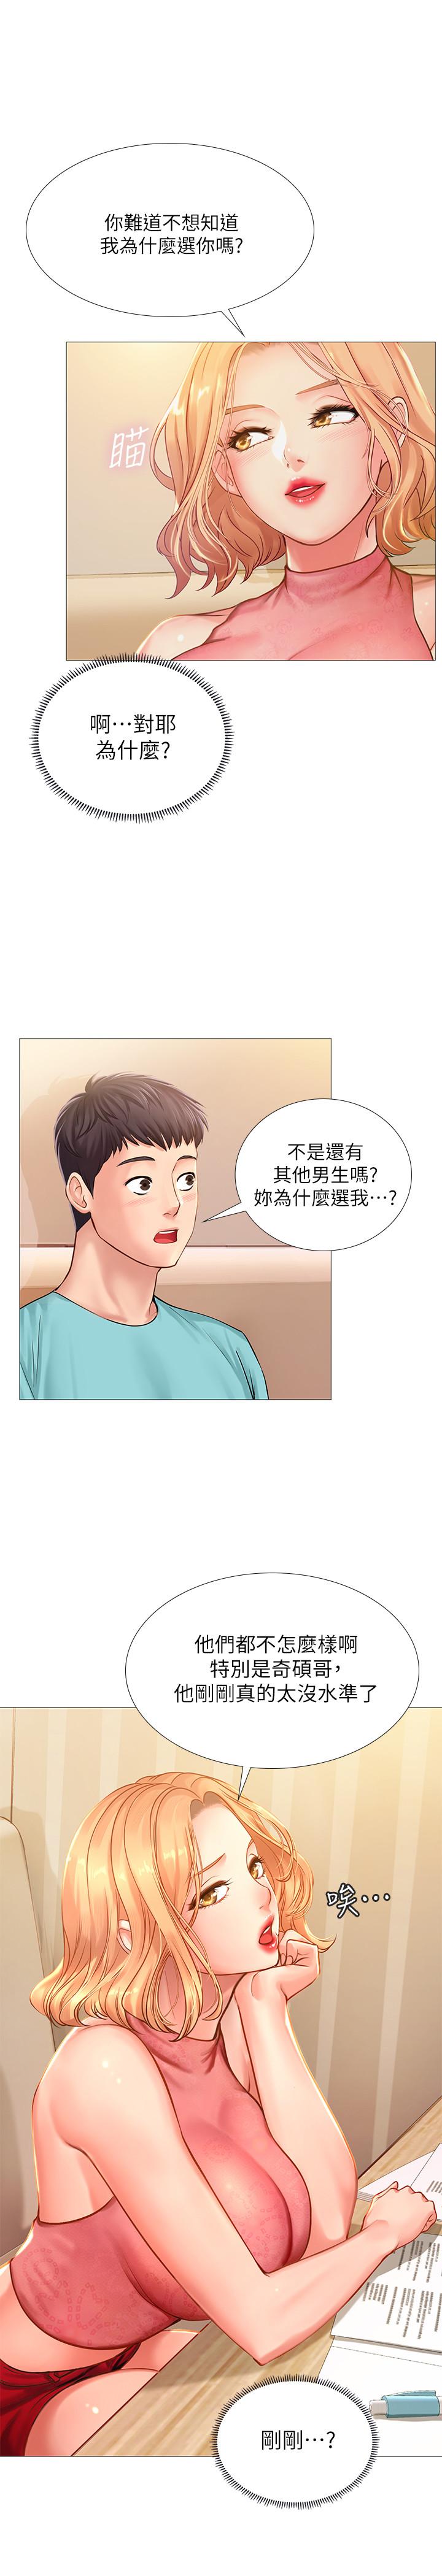 韩国污漫画 享樂補習街 第18话-来自学伴的安慰 27